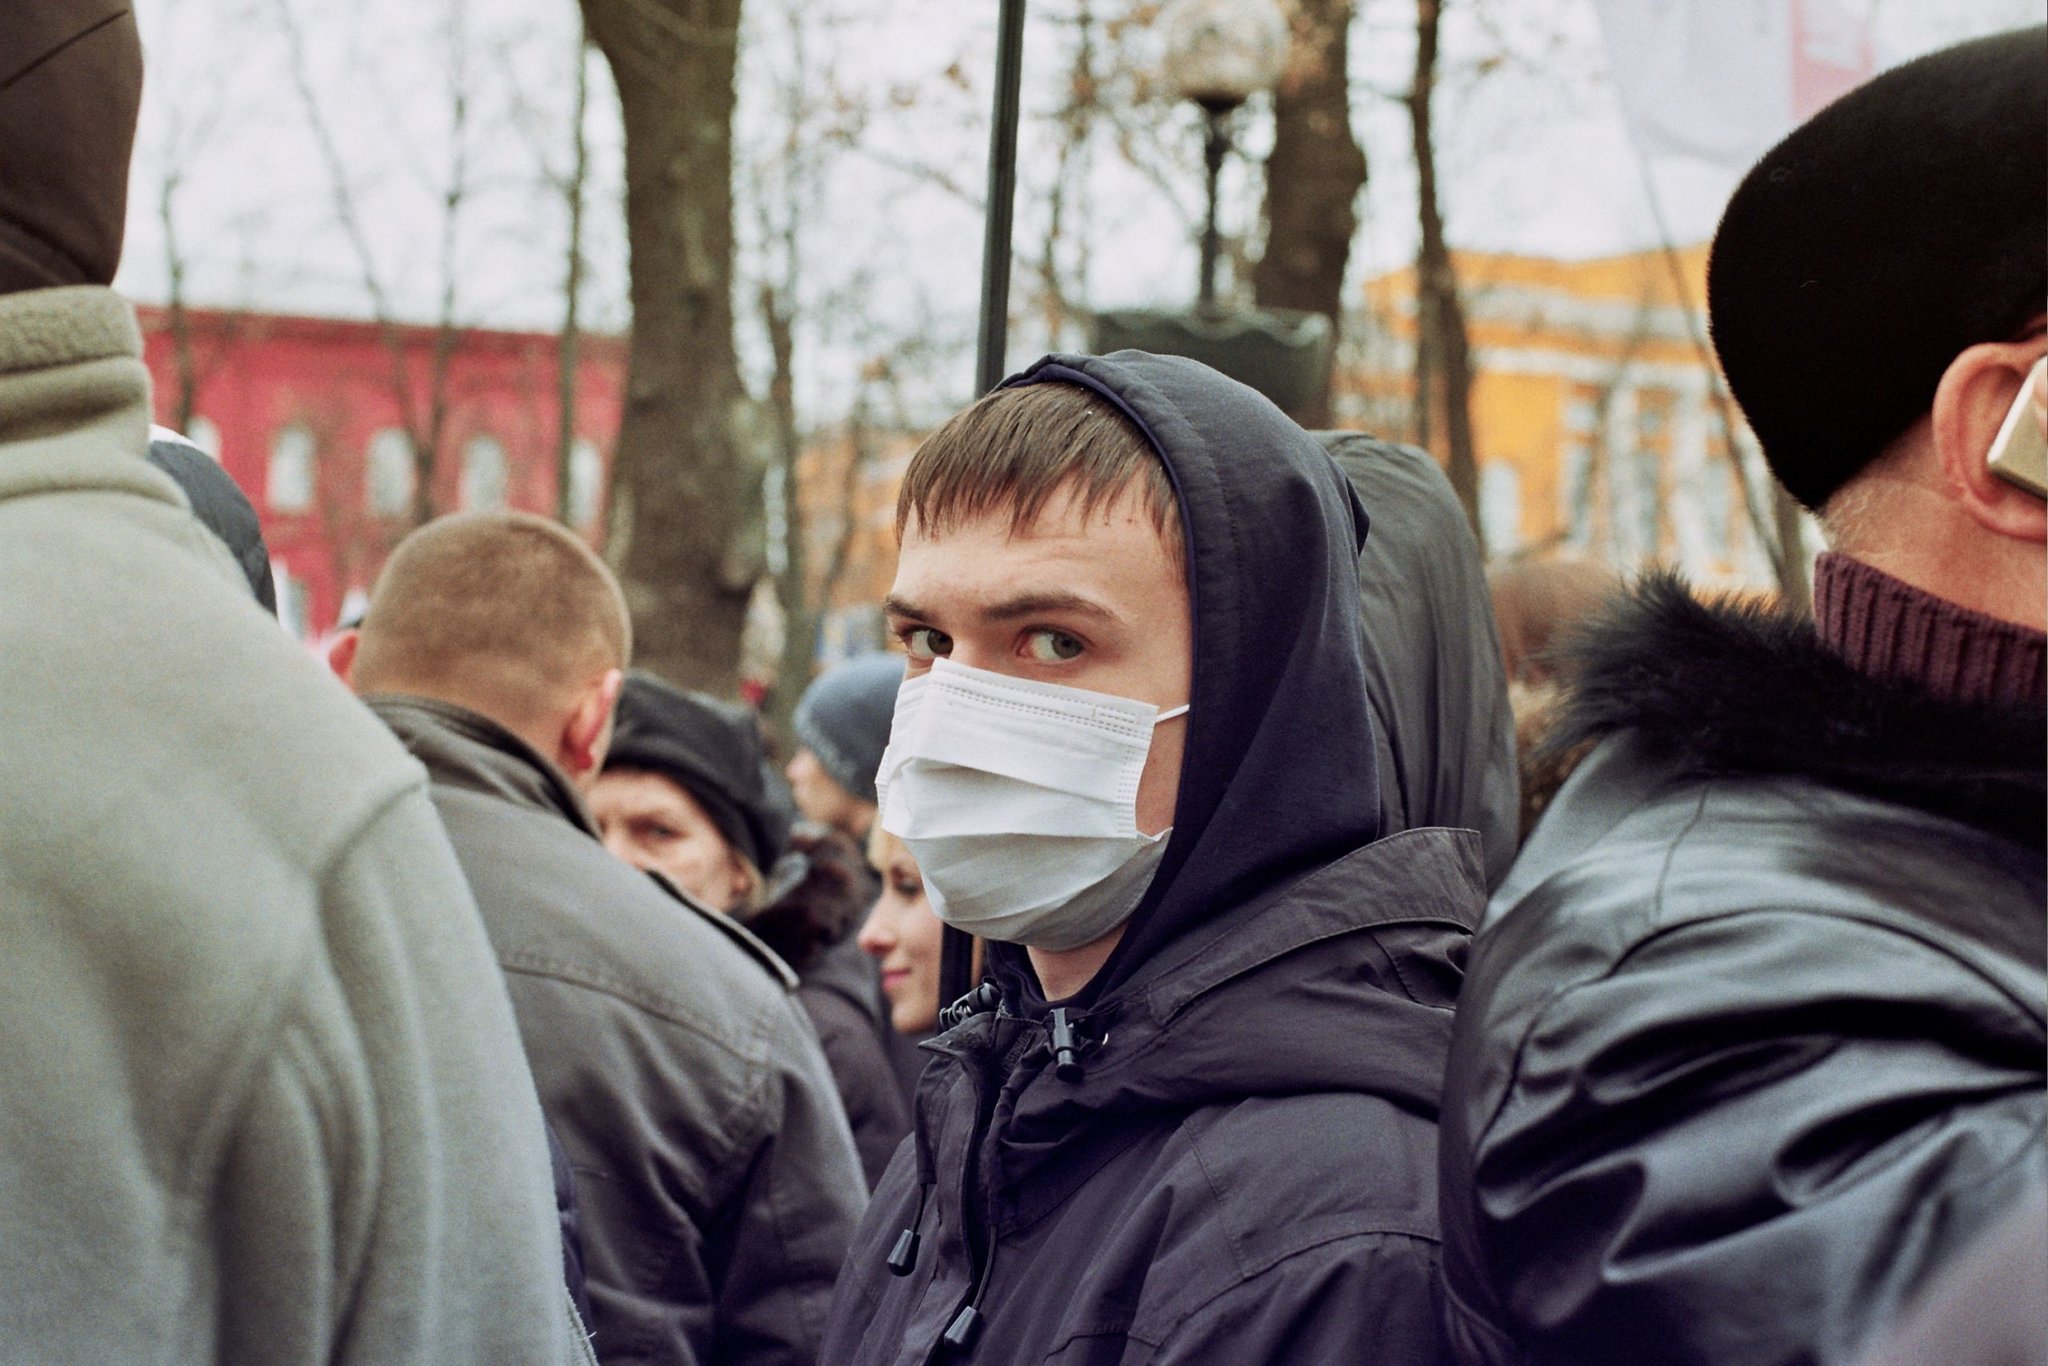 несовершеннолетний в маске, автор: mac_ivan, лицензия: CC BY 2.0